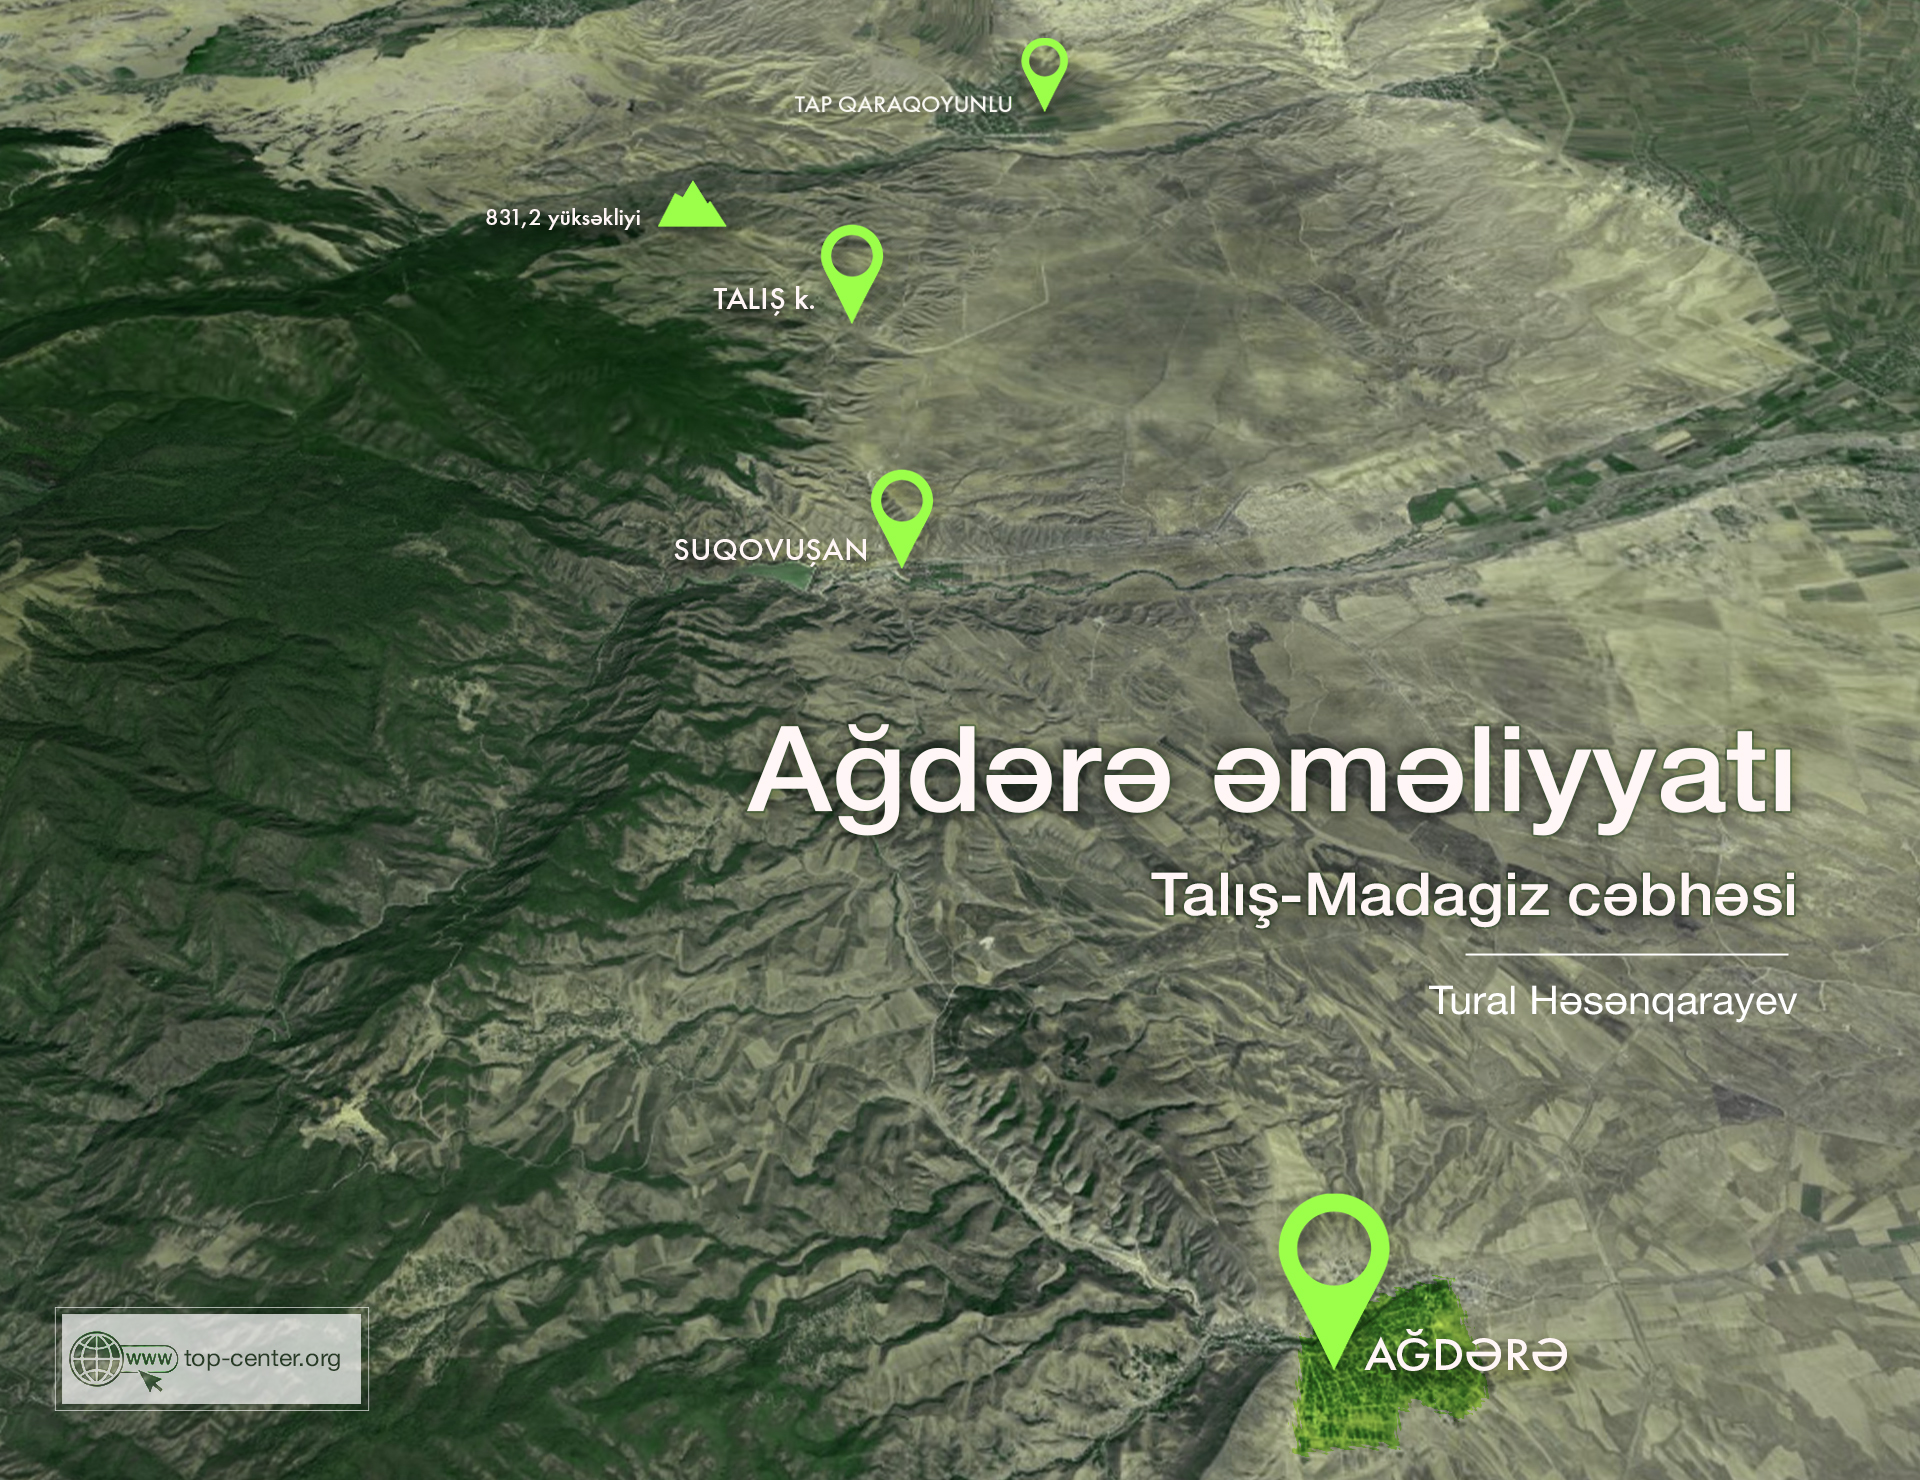 Hostilities in Aghdara (Talysh-Madagiz front)